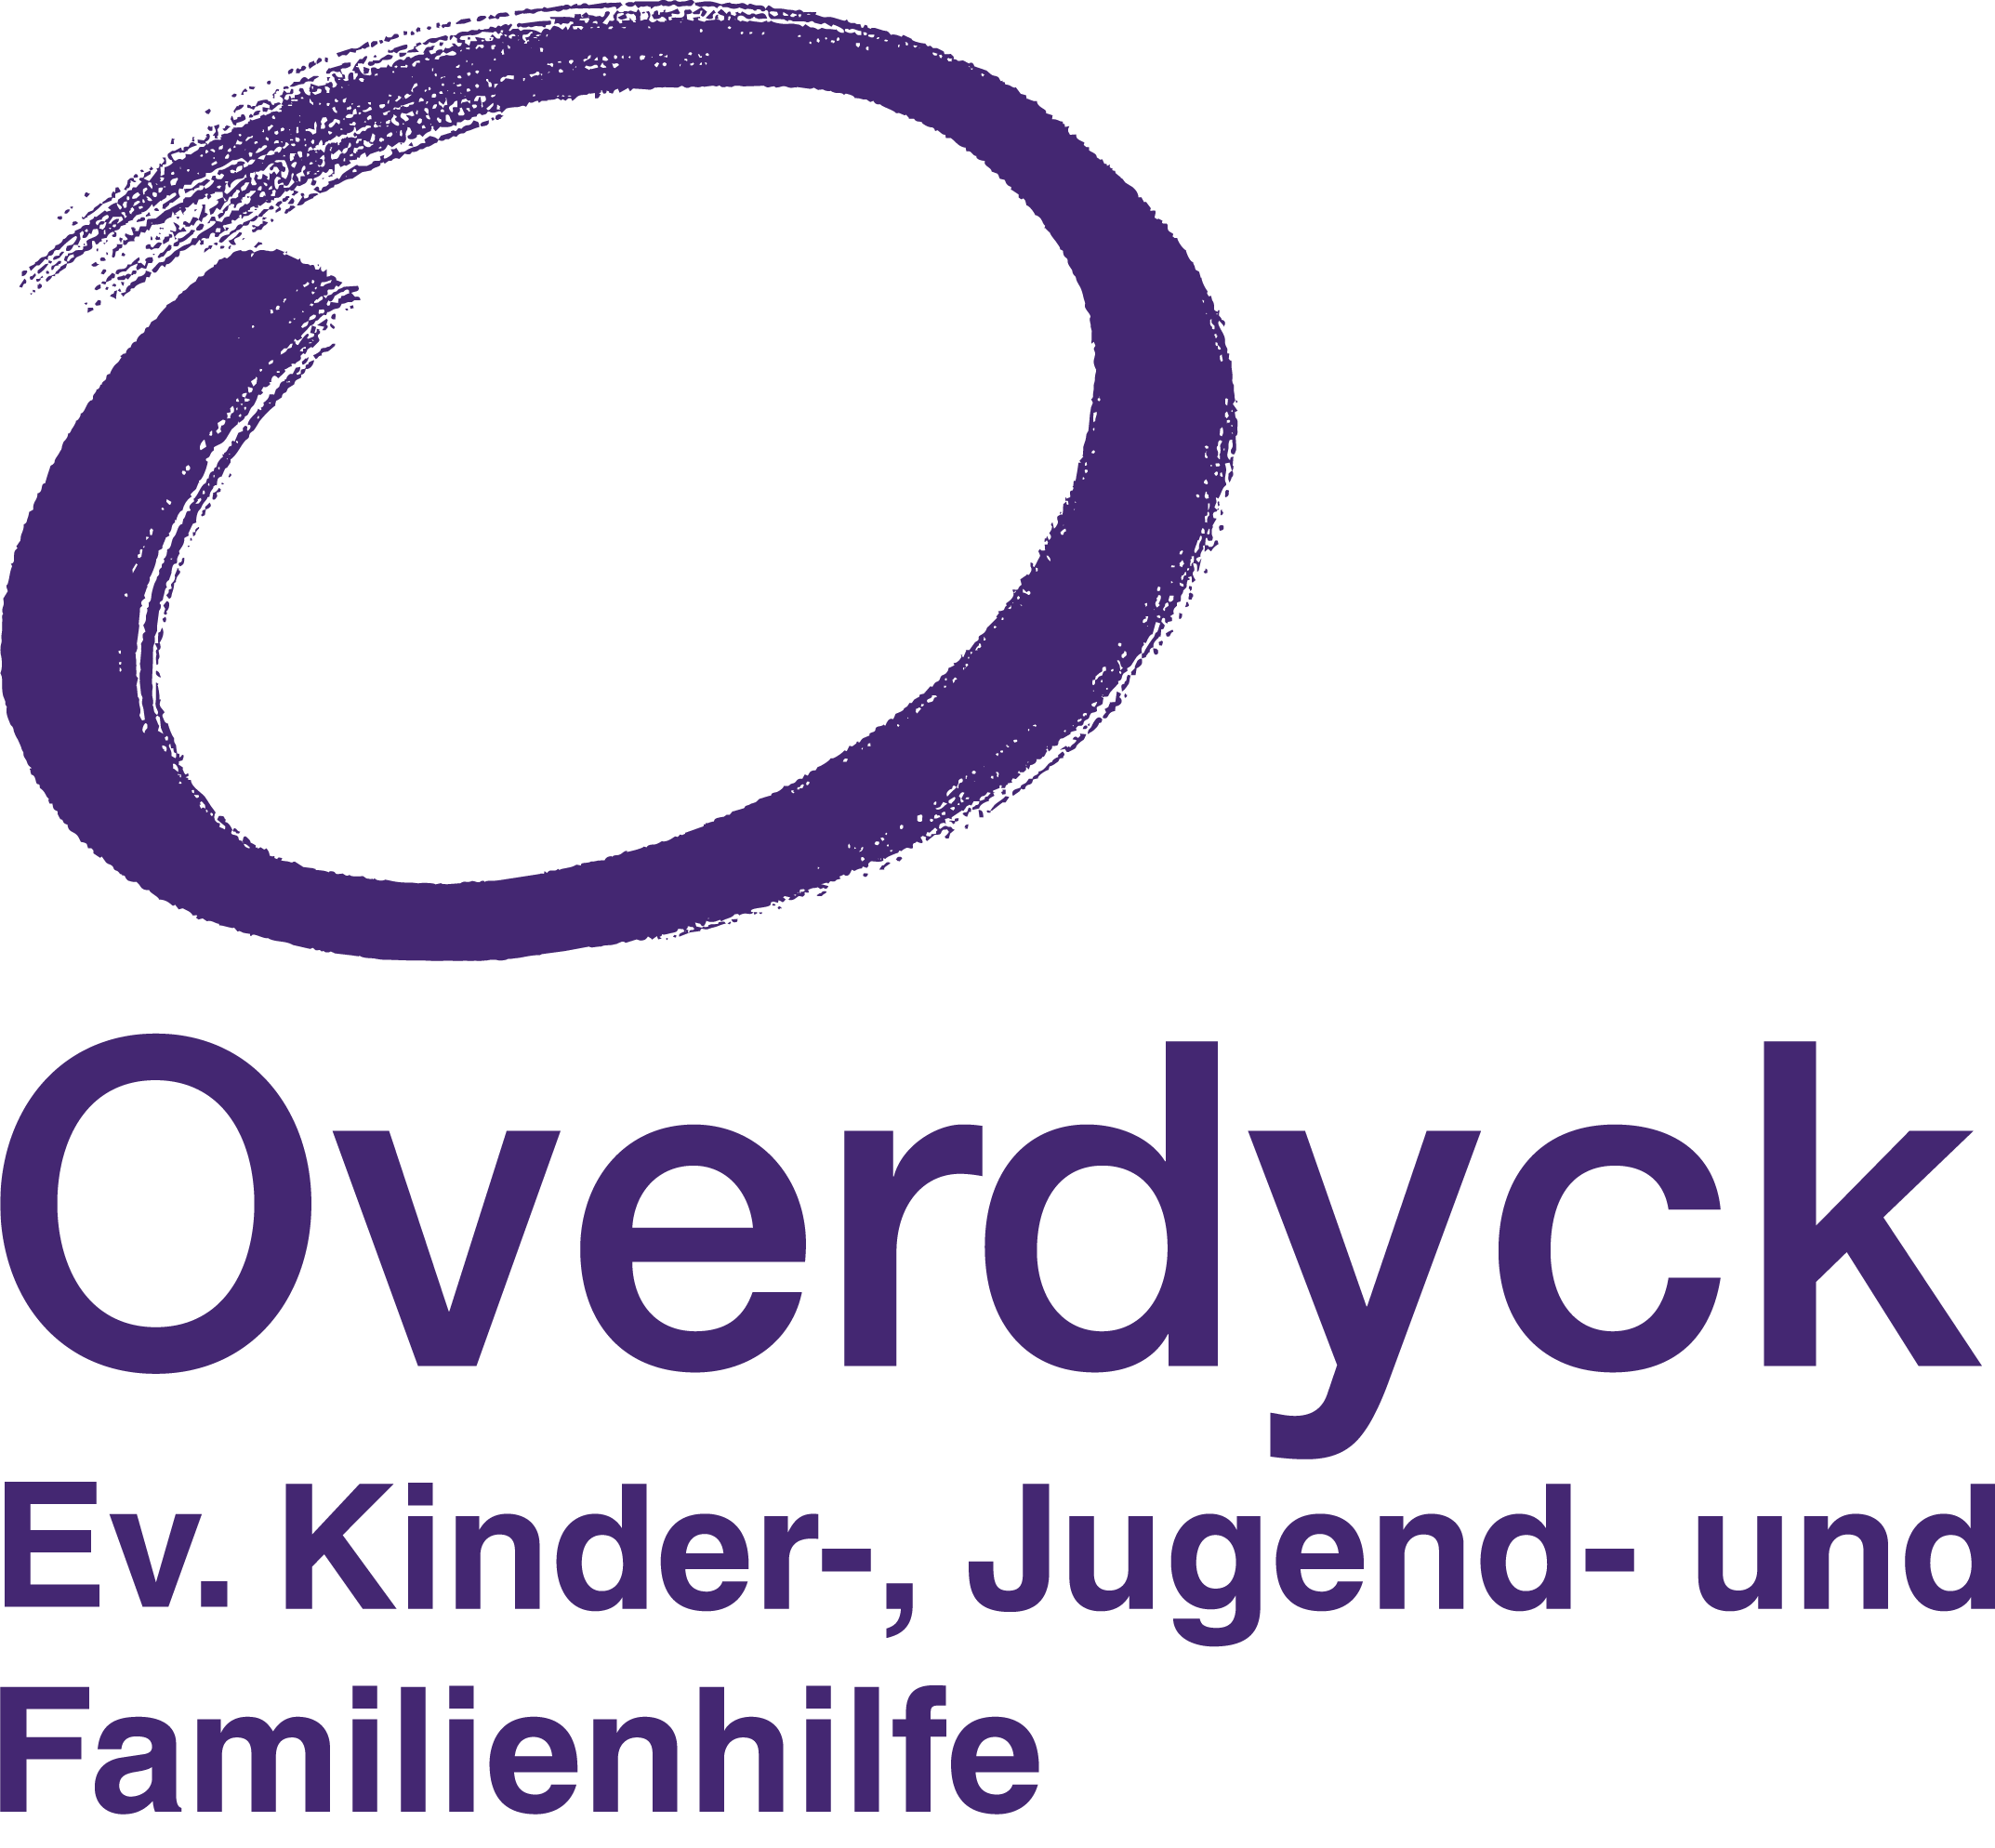 Overdyck - Ev. Kinder-, Jugend- und Familienhilfe gGmbH